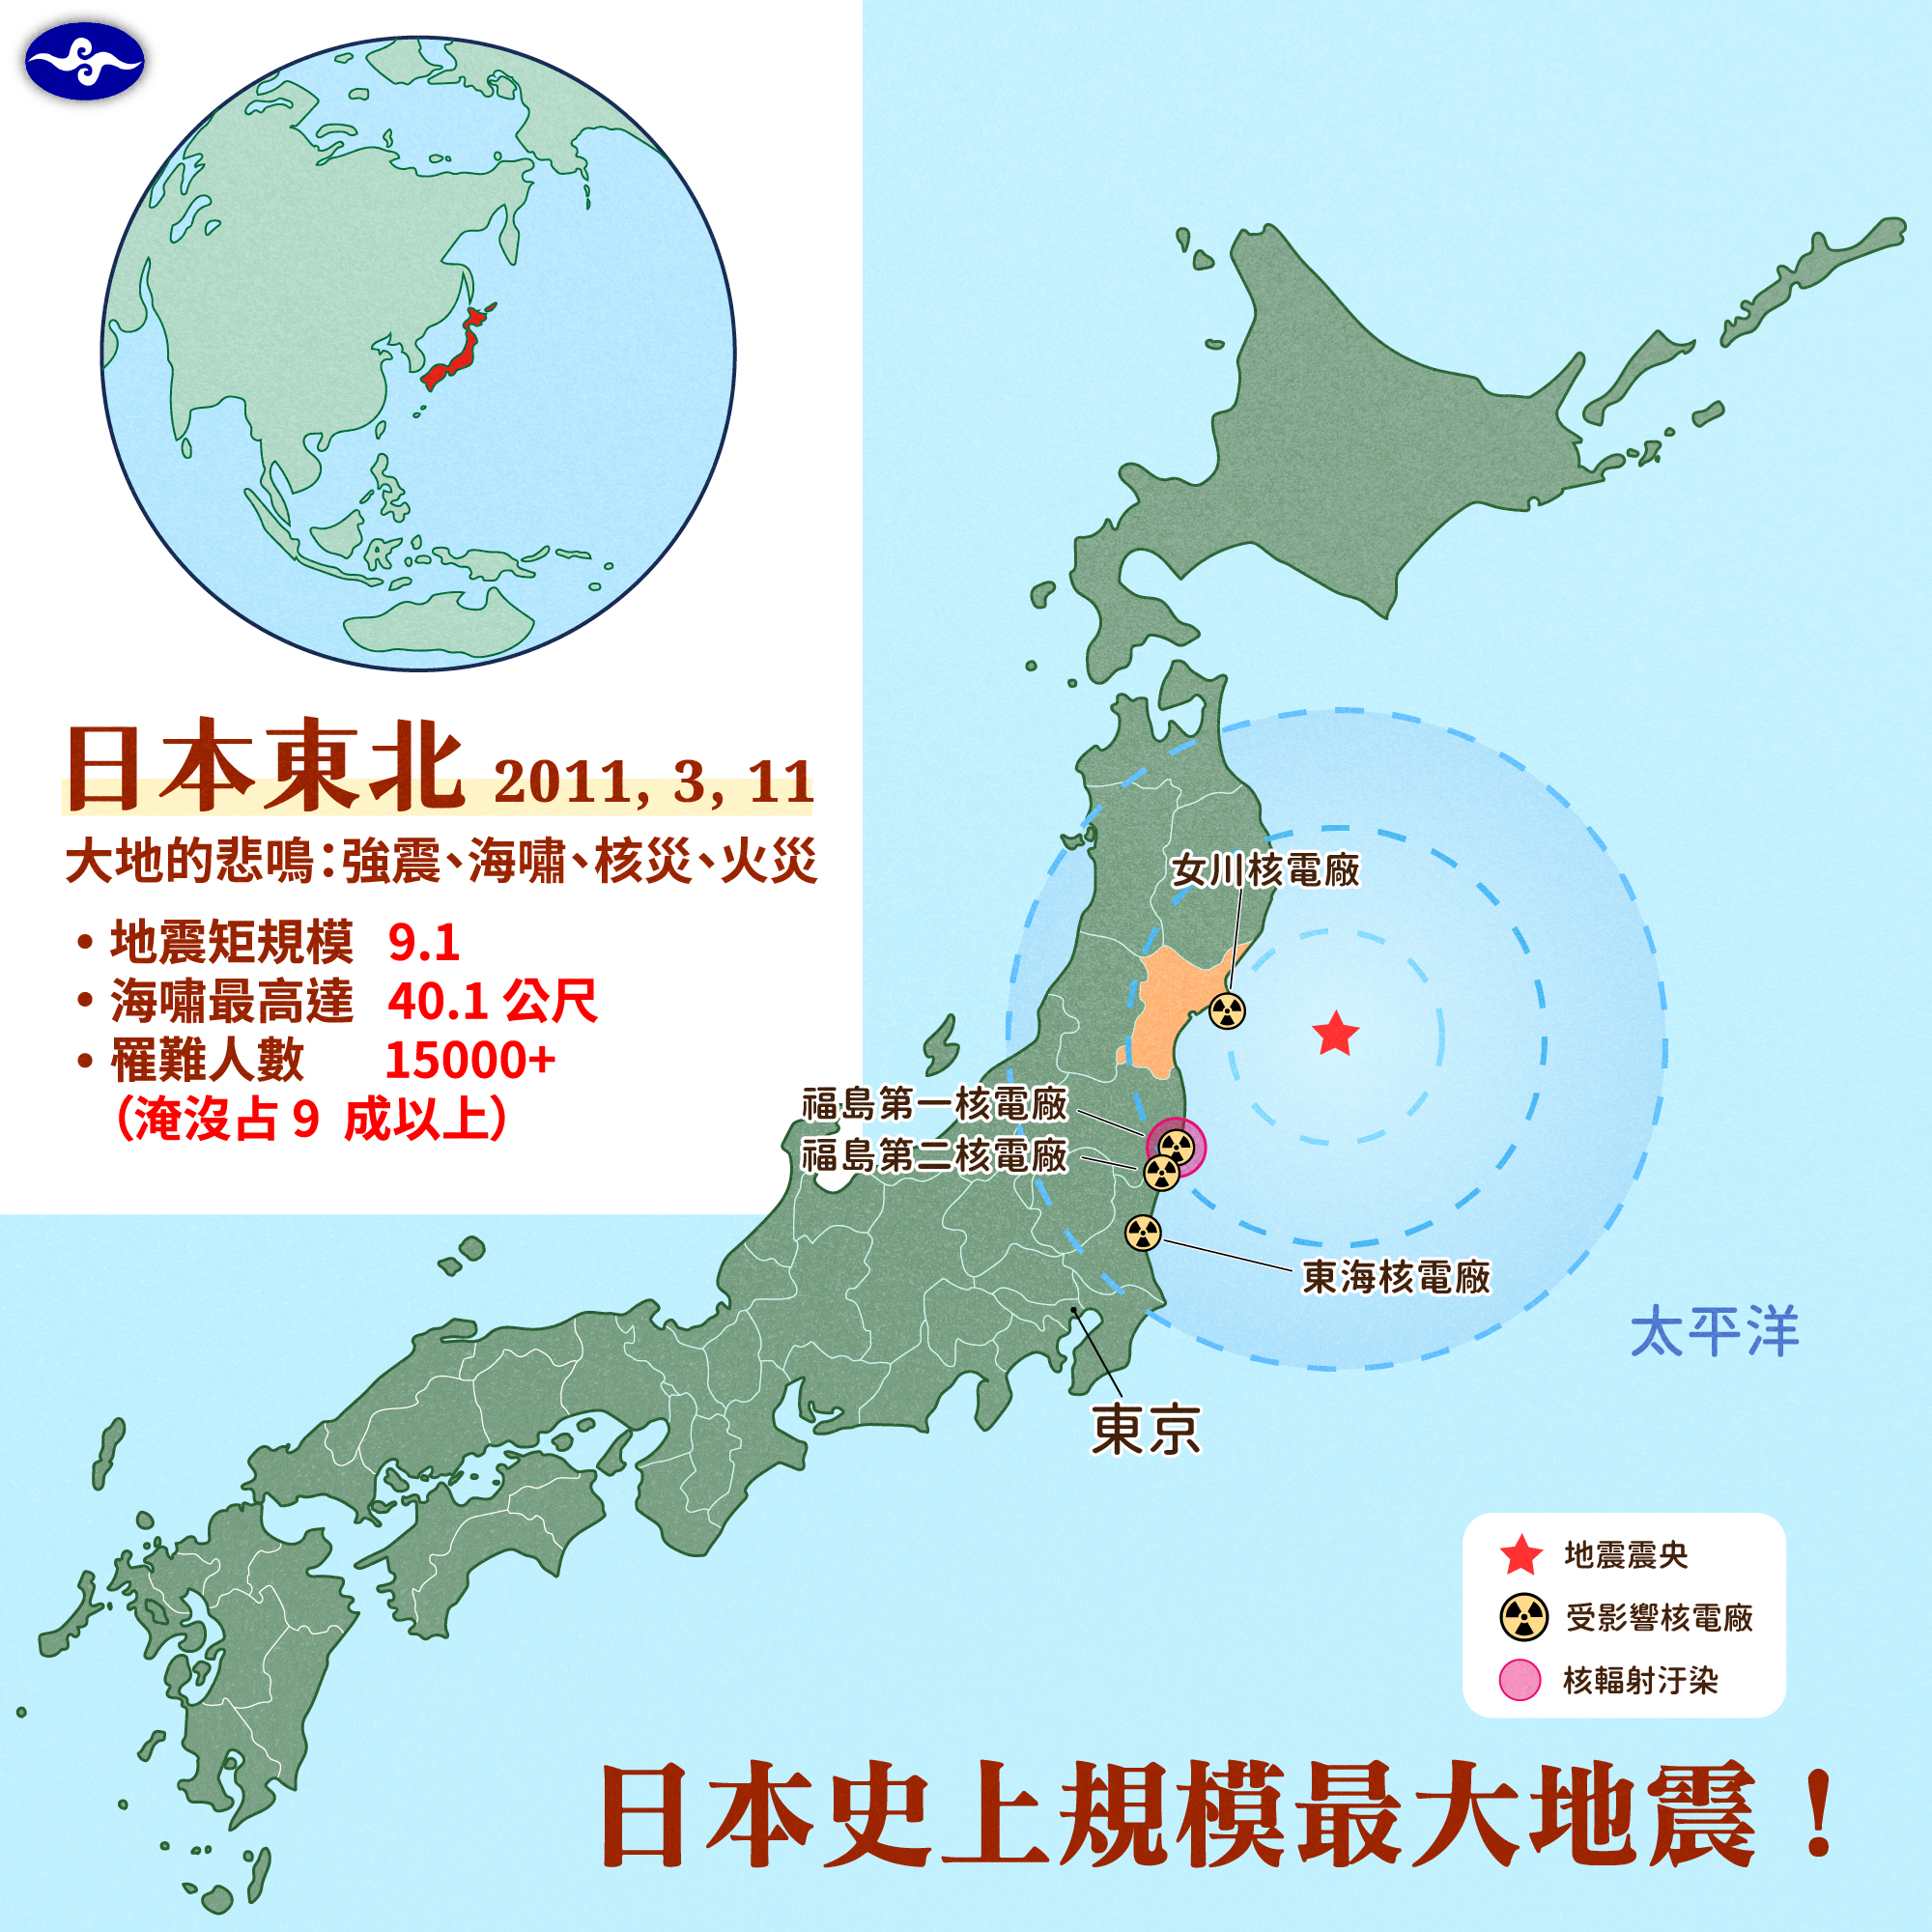 日本史上規模最大地震。